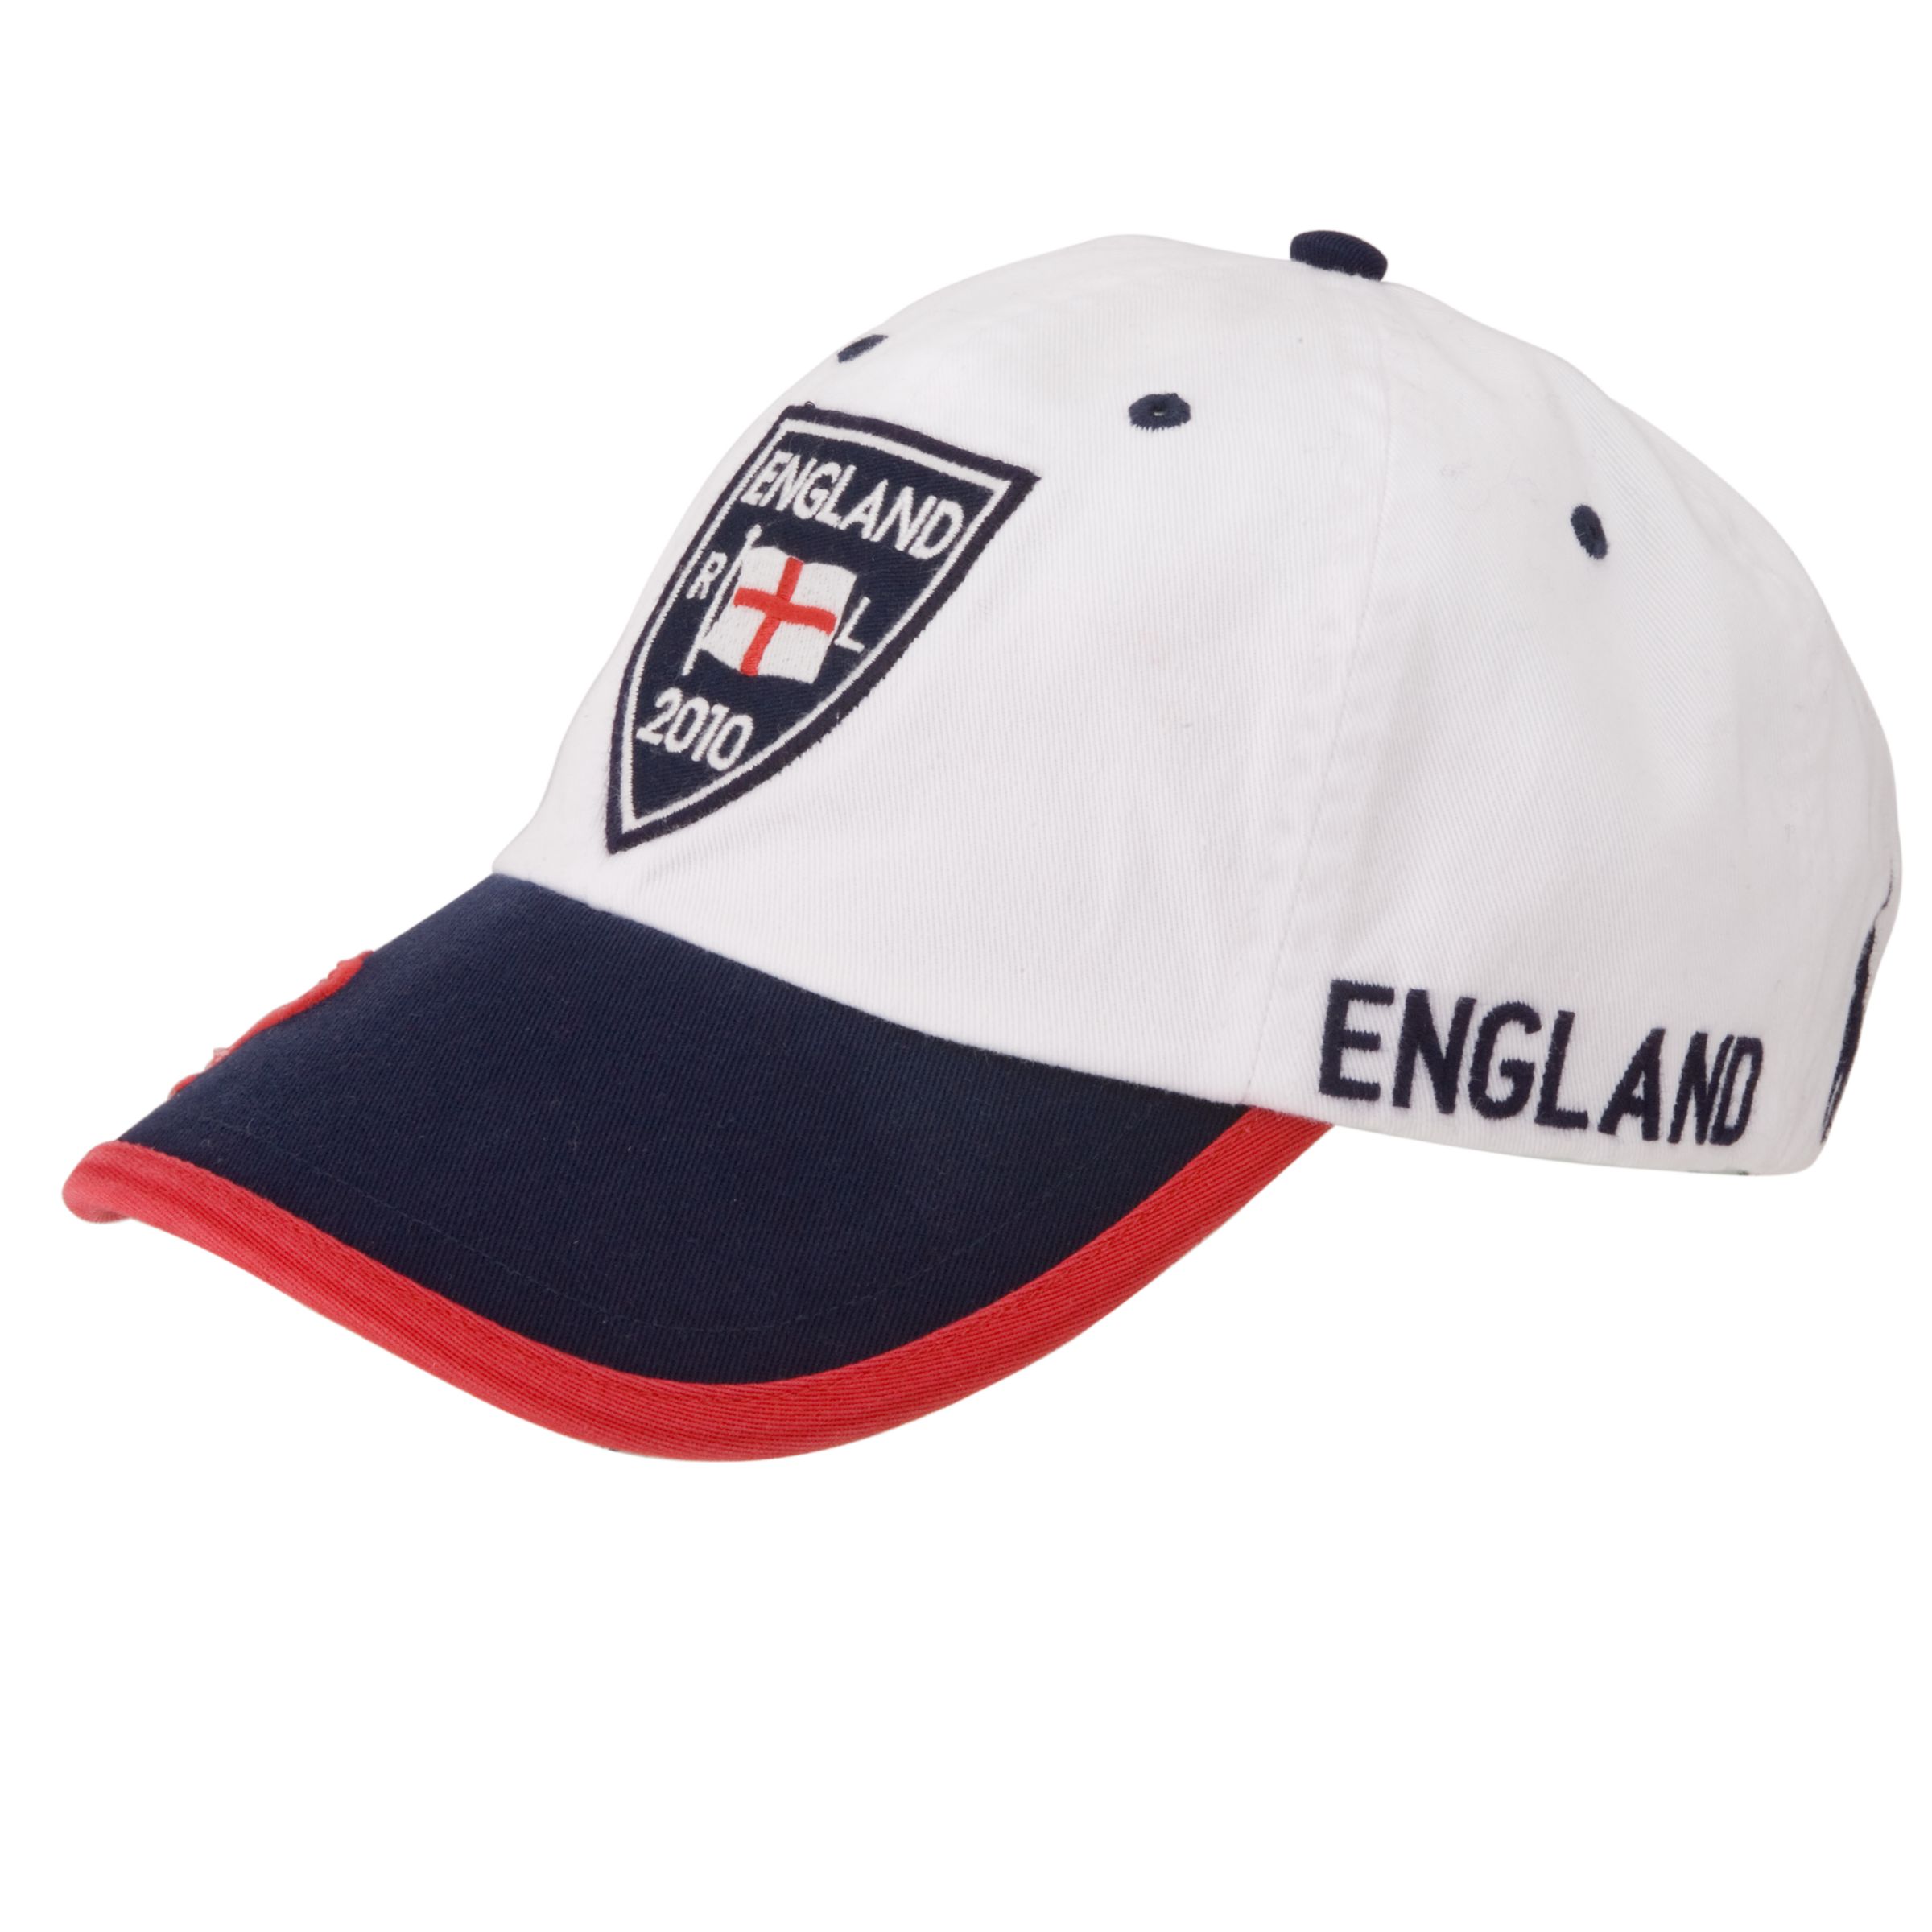 Polo Ralph Lauren Country Baseball Cap, England,